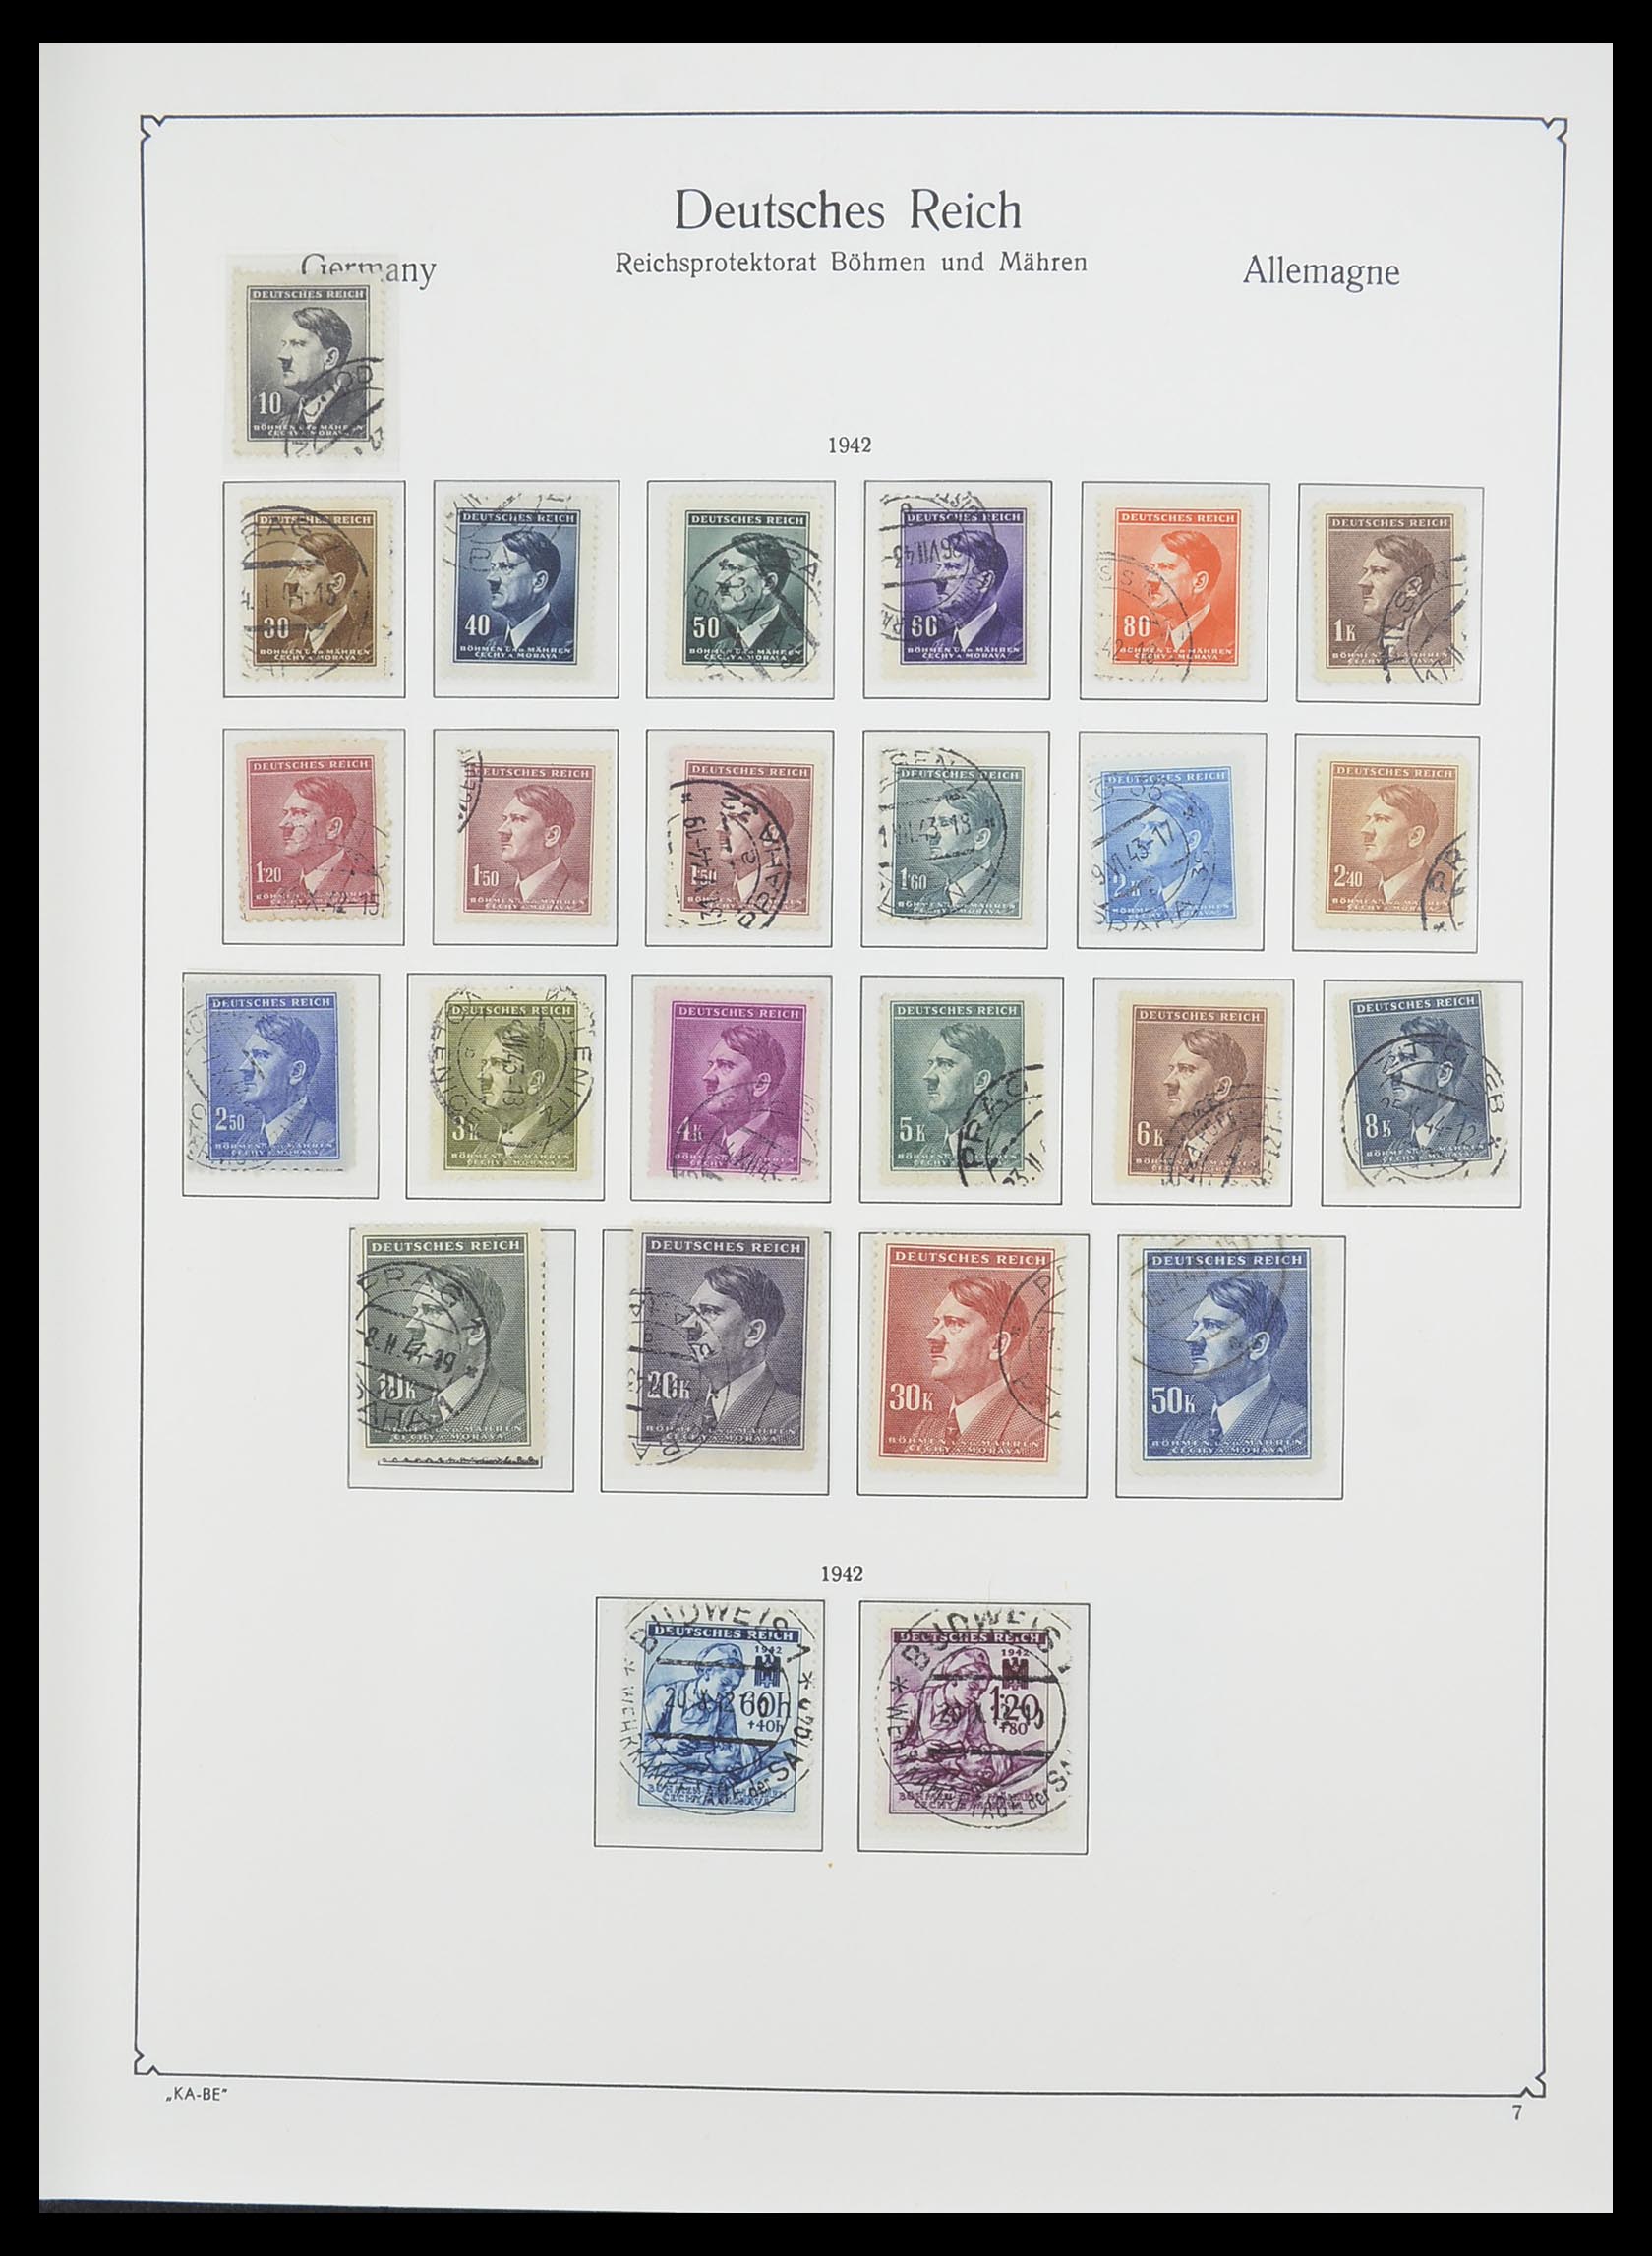 33360 012 - Stamp collection 33360 German occupation 2nd world war 1939-1945.